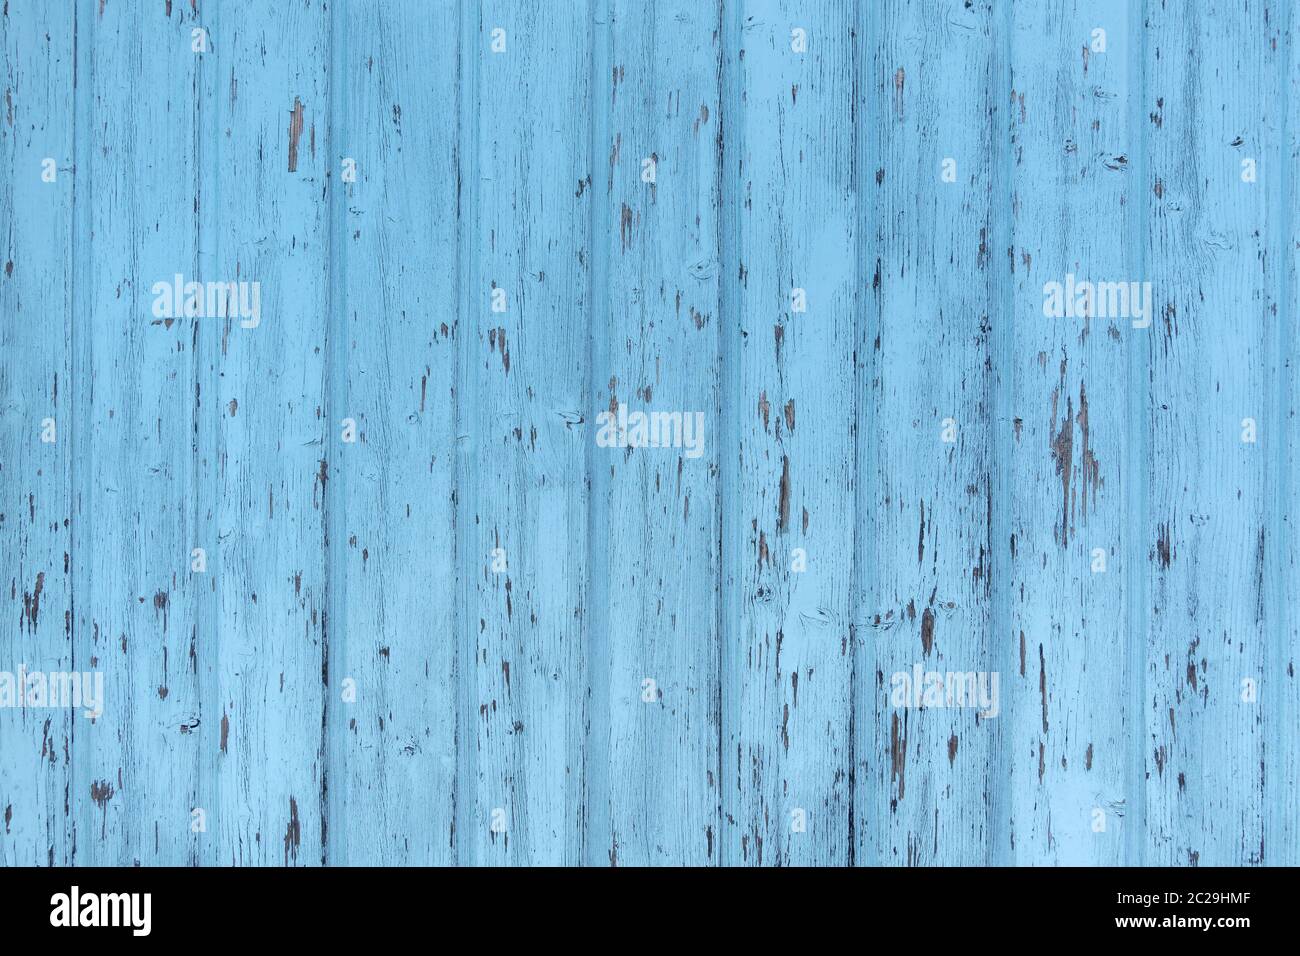 Détail d'un mur en bois bleu clair et abîmé en panneaux verticaux Banque D'Images